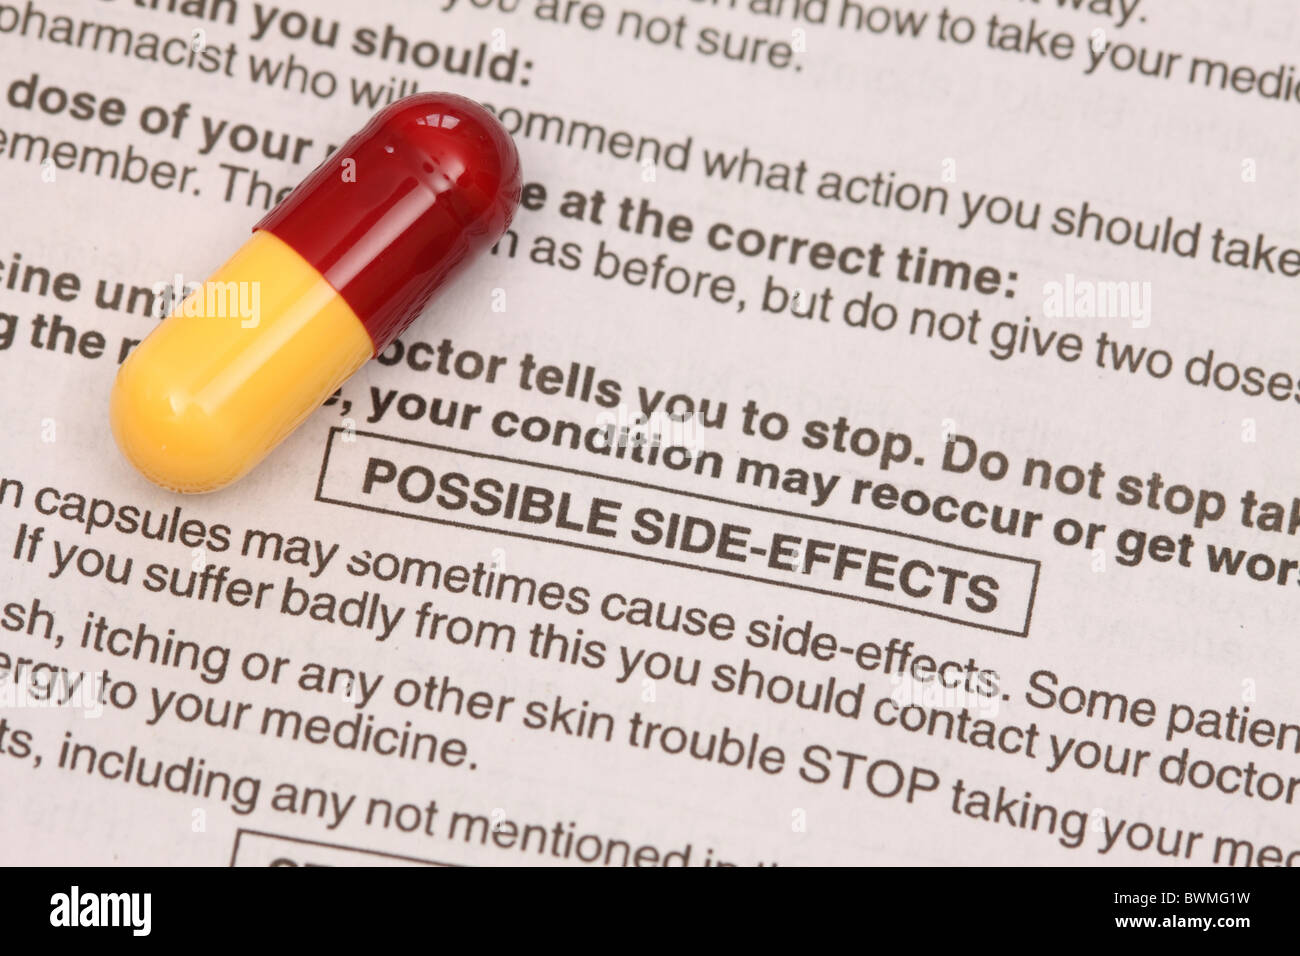 Amoxicillin Antibiotika Tablette Kapsel mit Warnung über mögliche Nebenwirkungen von Medikamenten Stockfoto